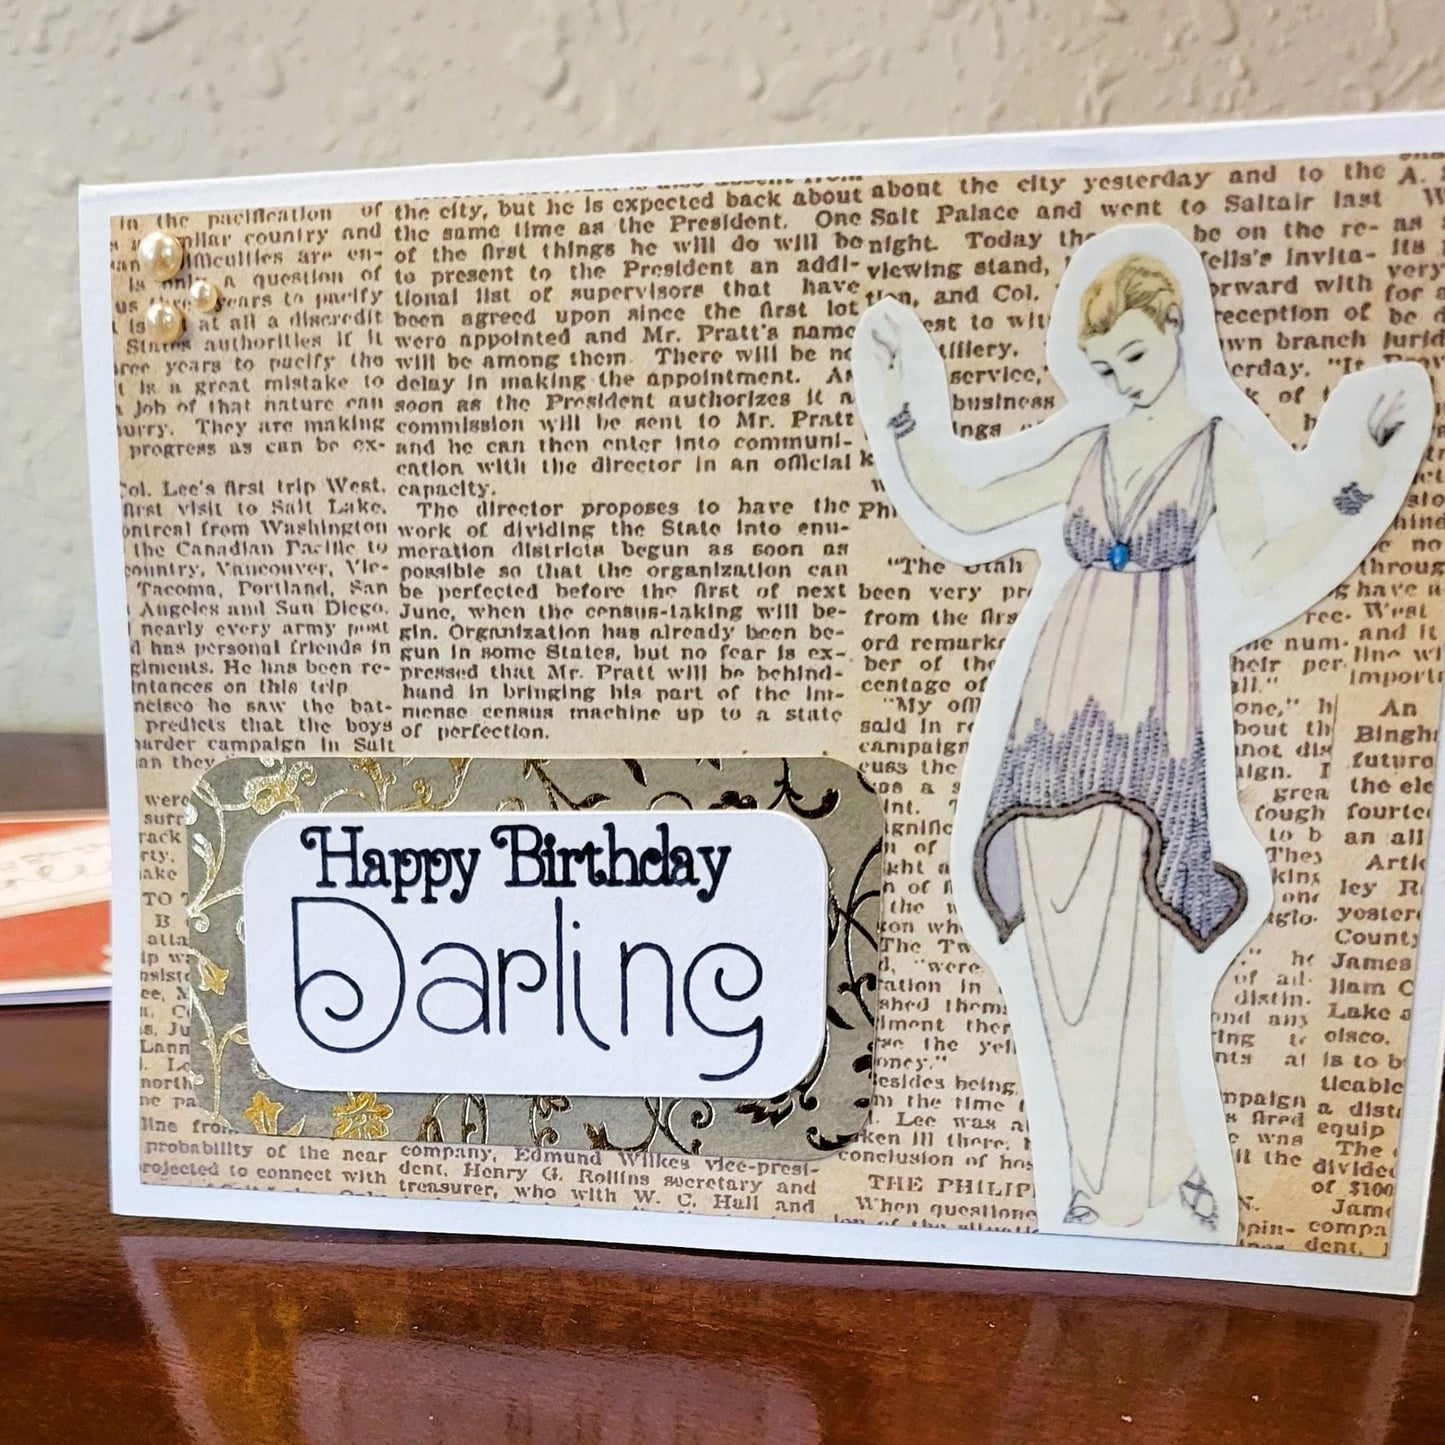 Vintage Ladies, Elegant Lady - Happy Birthday, Vintage-Inspired Collection - Handmade Greeting Card - 31 Rubies Designs